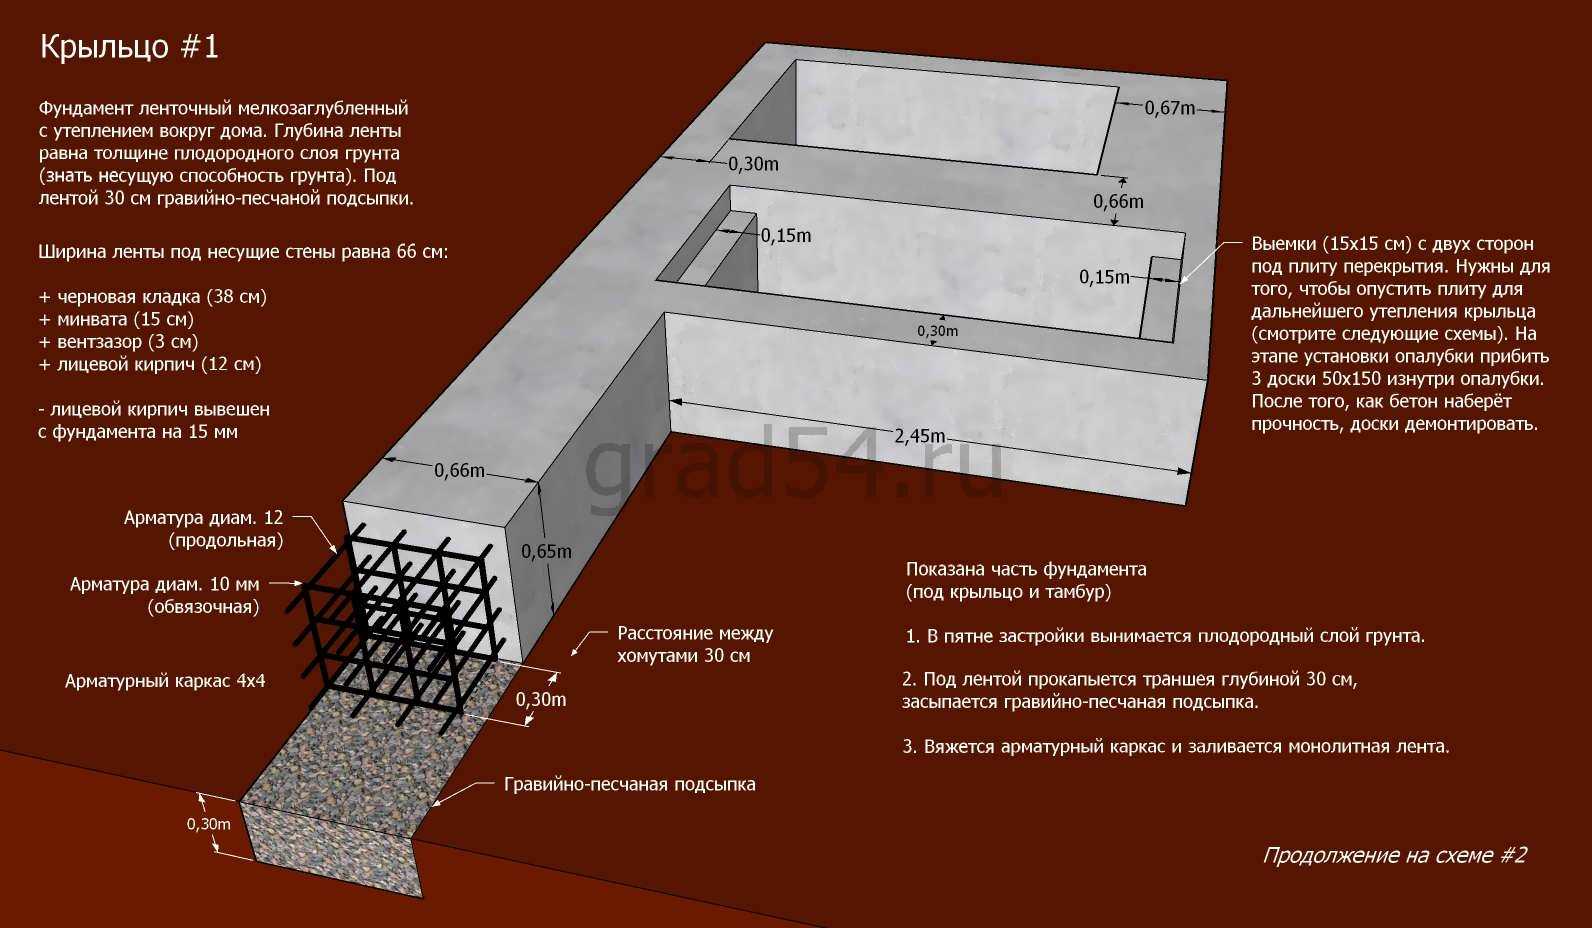 2. Расчет объема бетона и арматуры